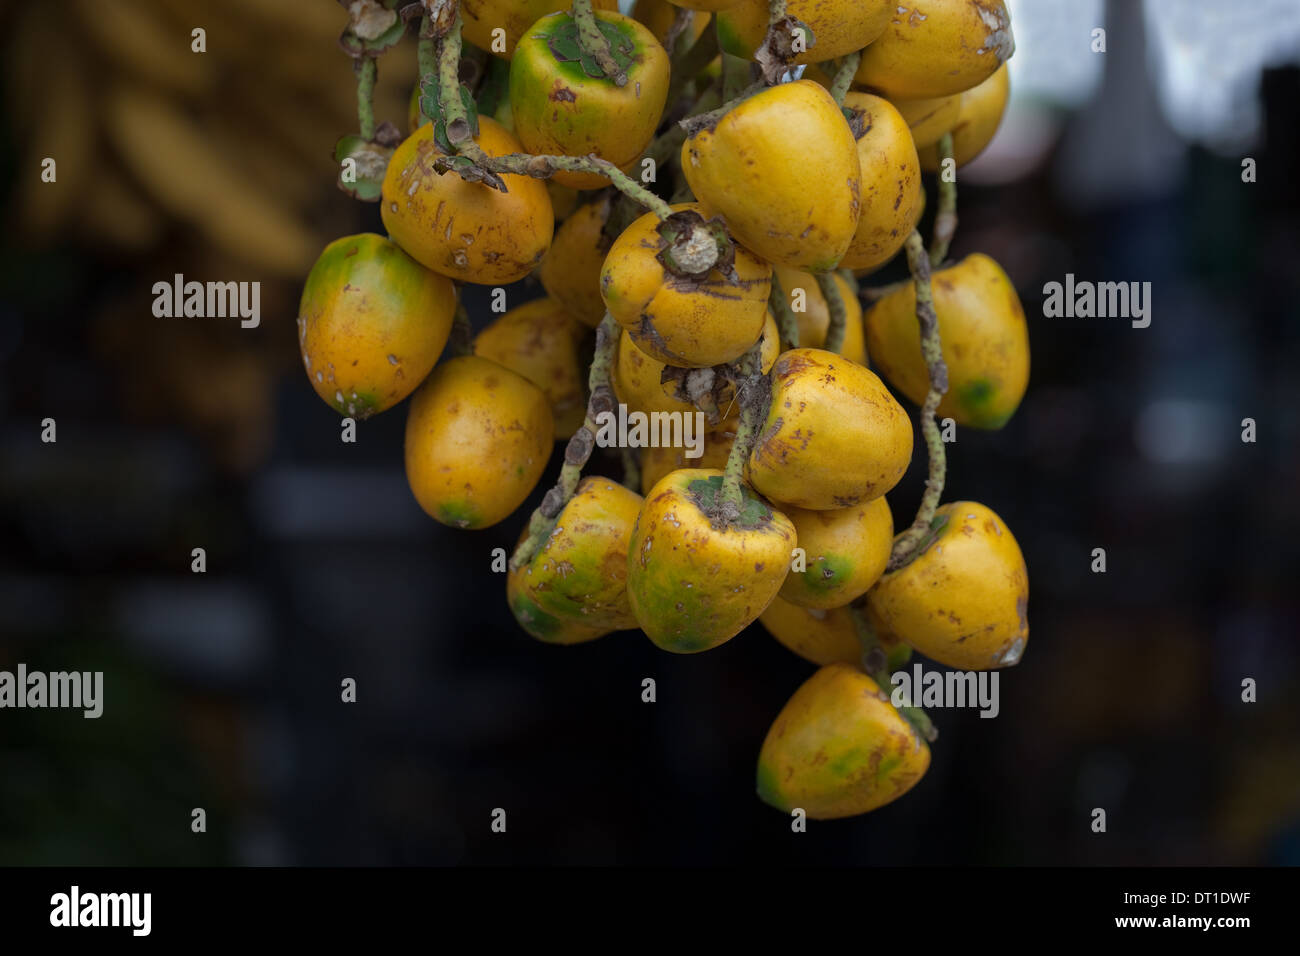 Ölpalme (Elaeis Guineensis), Baum, Obst oder "Muttern". Am Straßenrand Marktstand. Costa Rica. Stockfoto